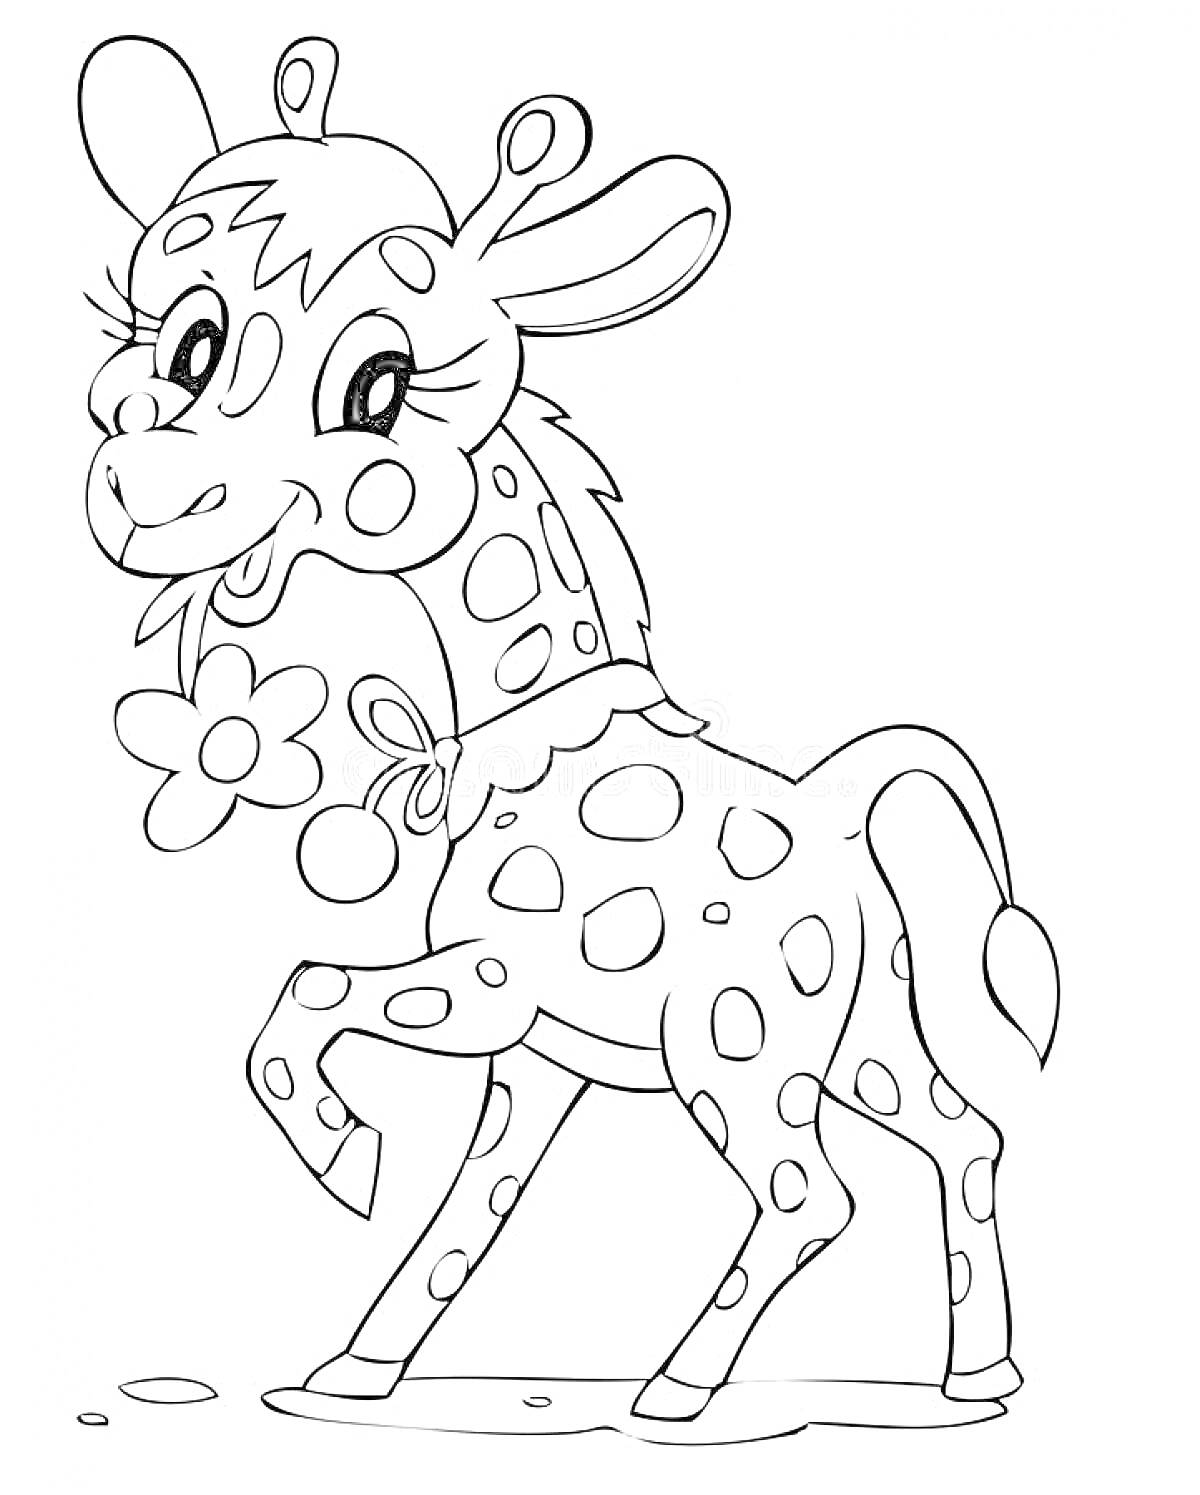 Раскраска Детский жираф с цветком на шее